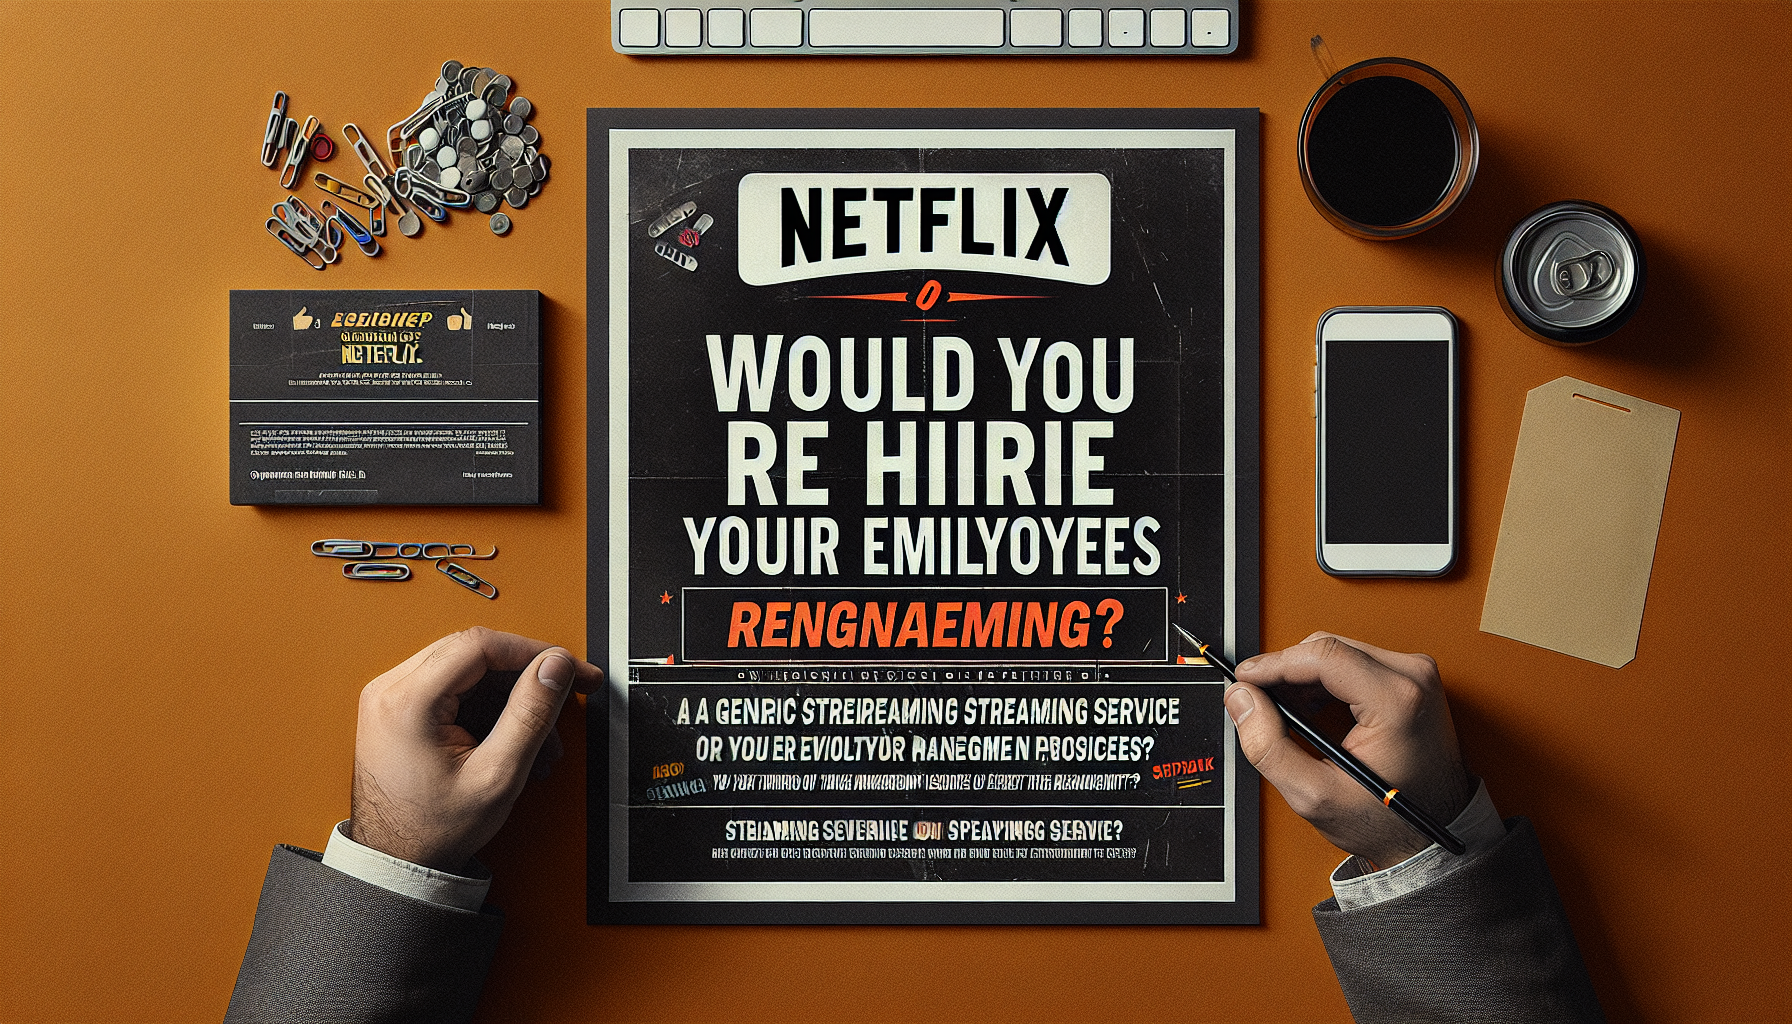 Netflix ermutigt Manager, die Wiedereinstellung ihrer Mitarbeiter in Betracht zu ziehen und sie zu entlassen, wenn die Antwort „Nein“ lautet. Erfahren Sie mehr über ihren Ansatz zur Mitarbeiterführung.